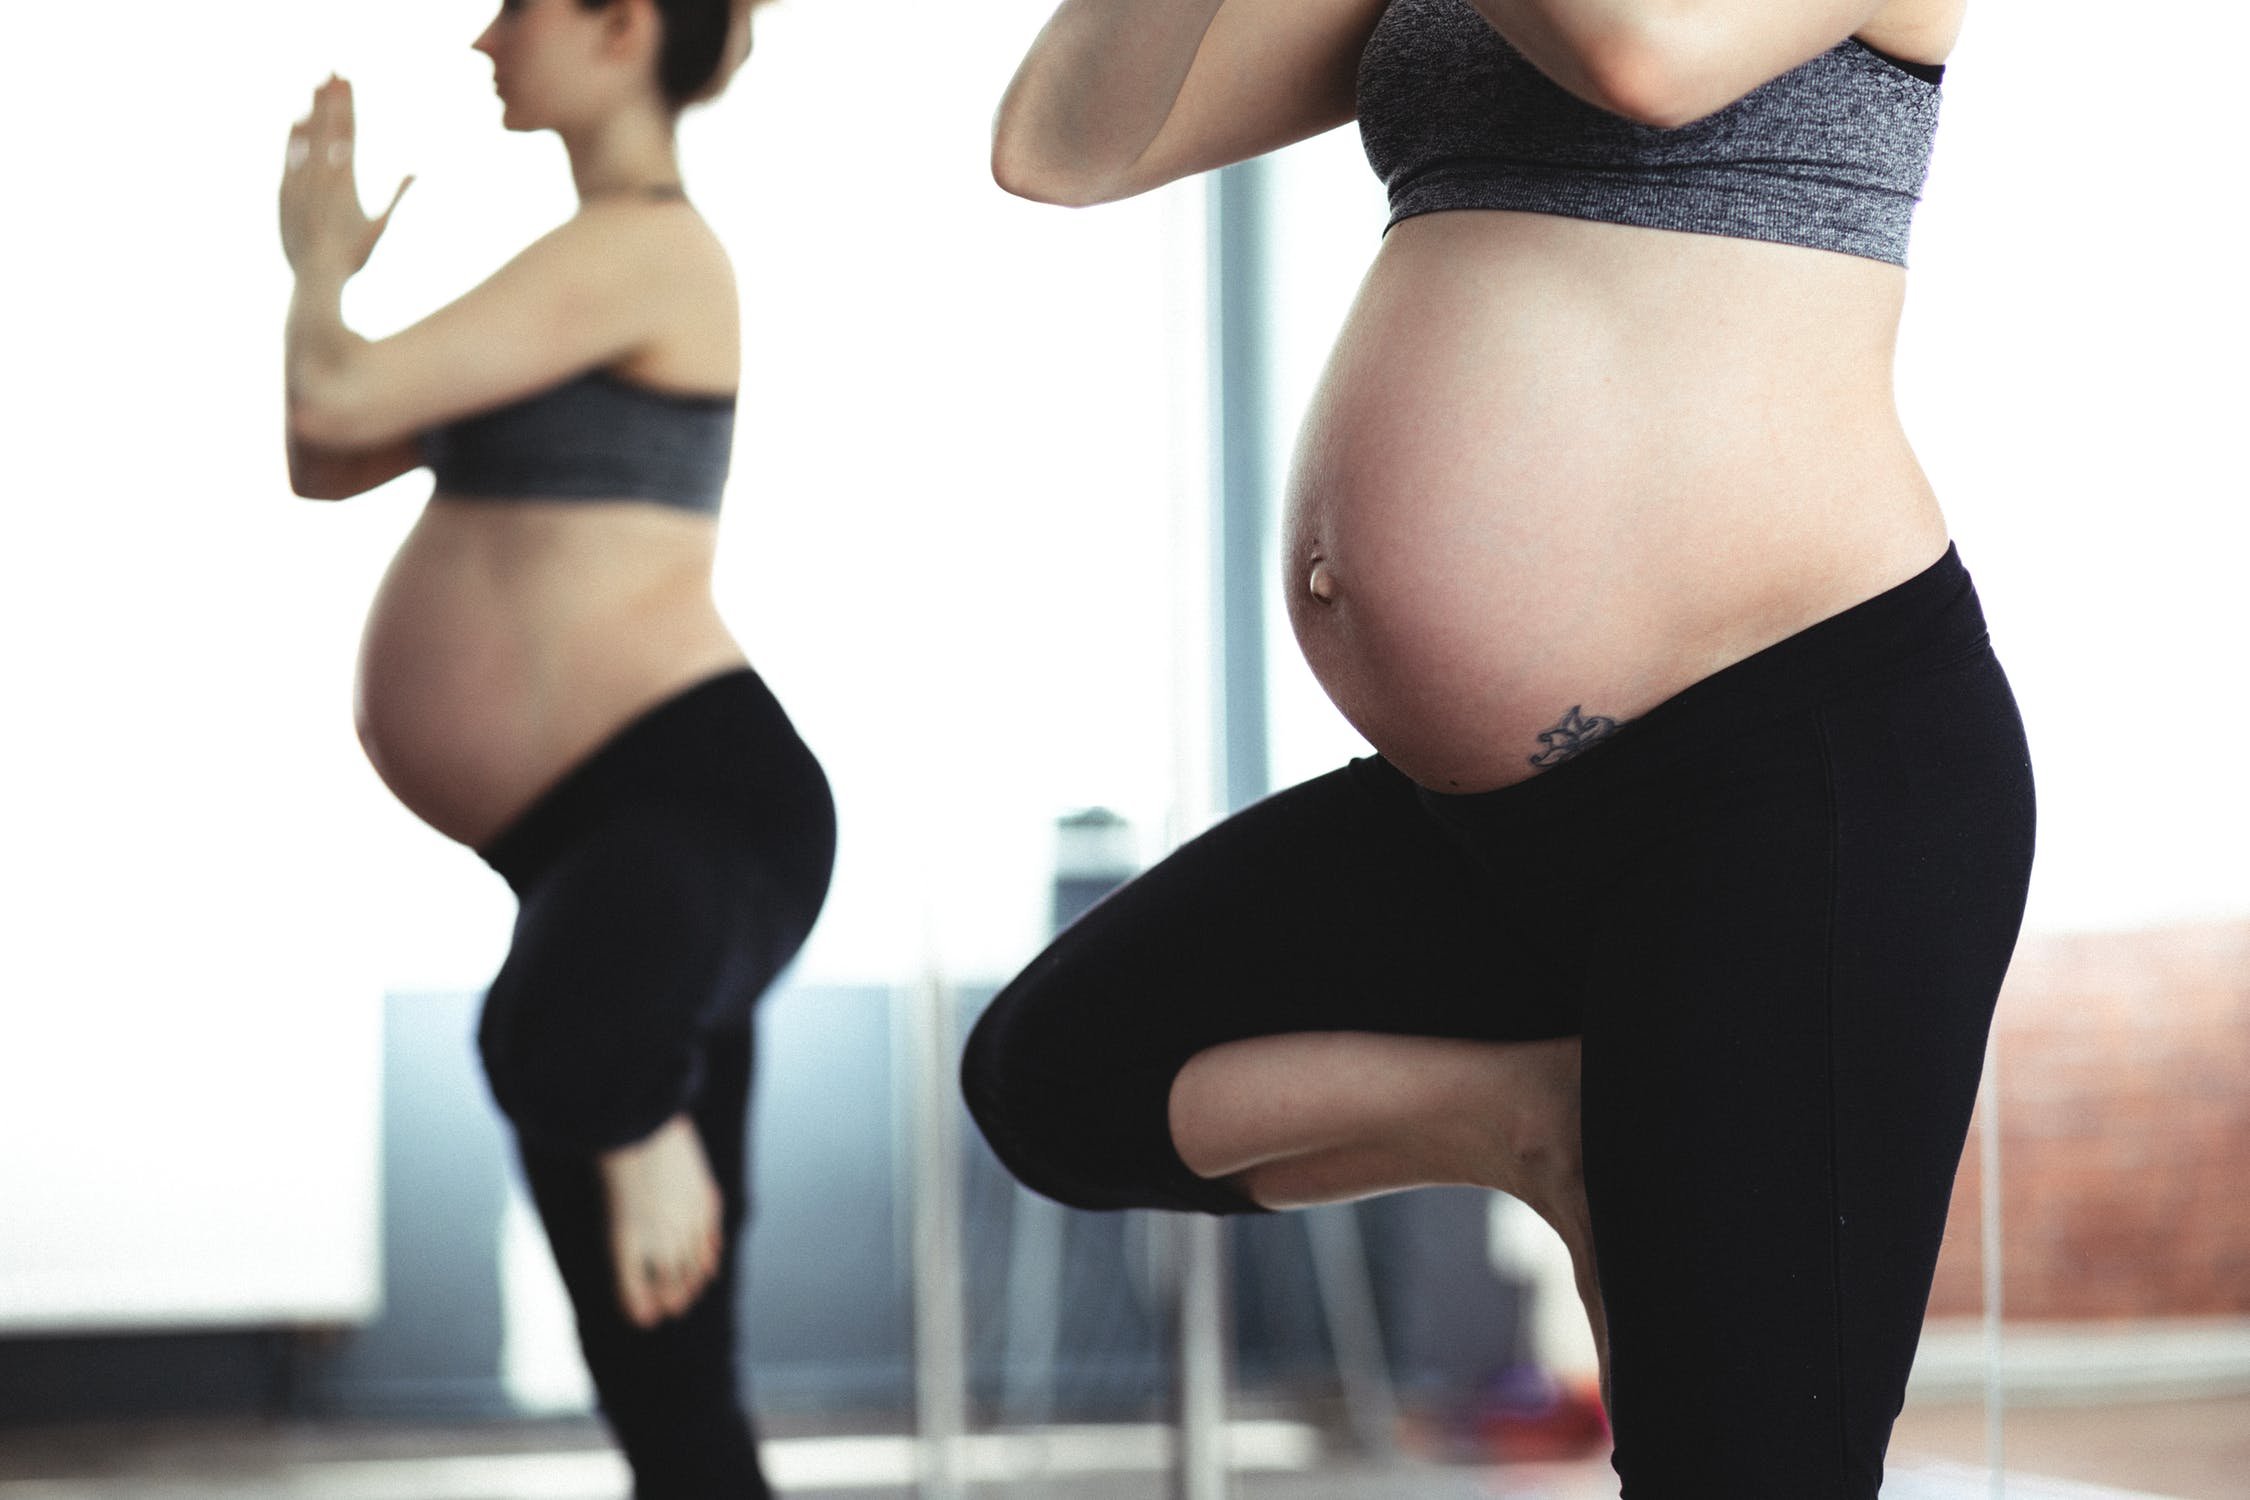 yoga para grávidas